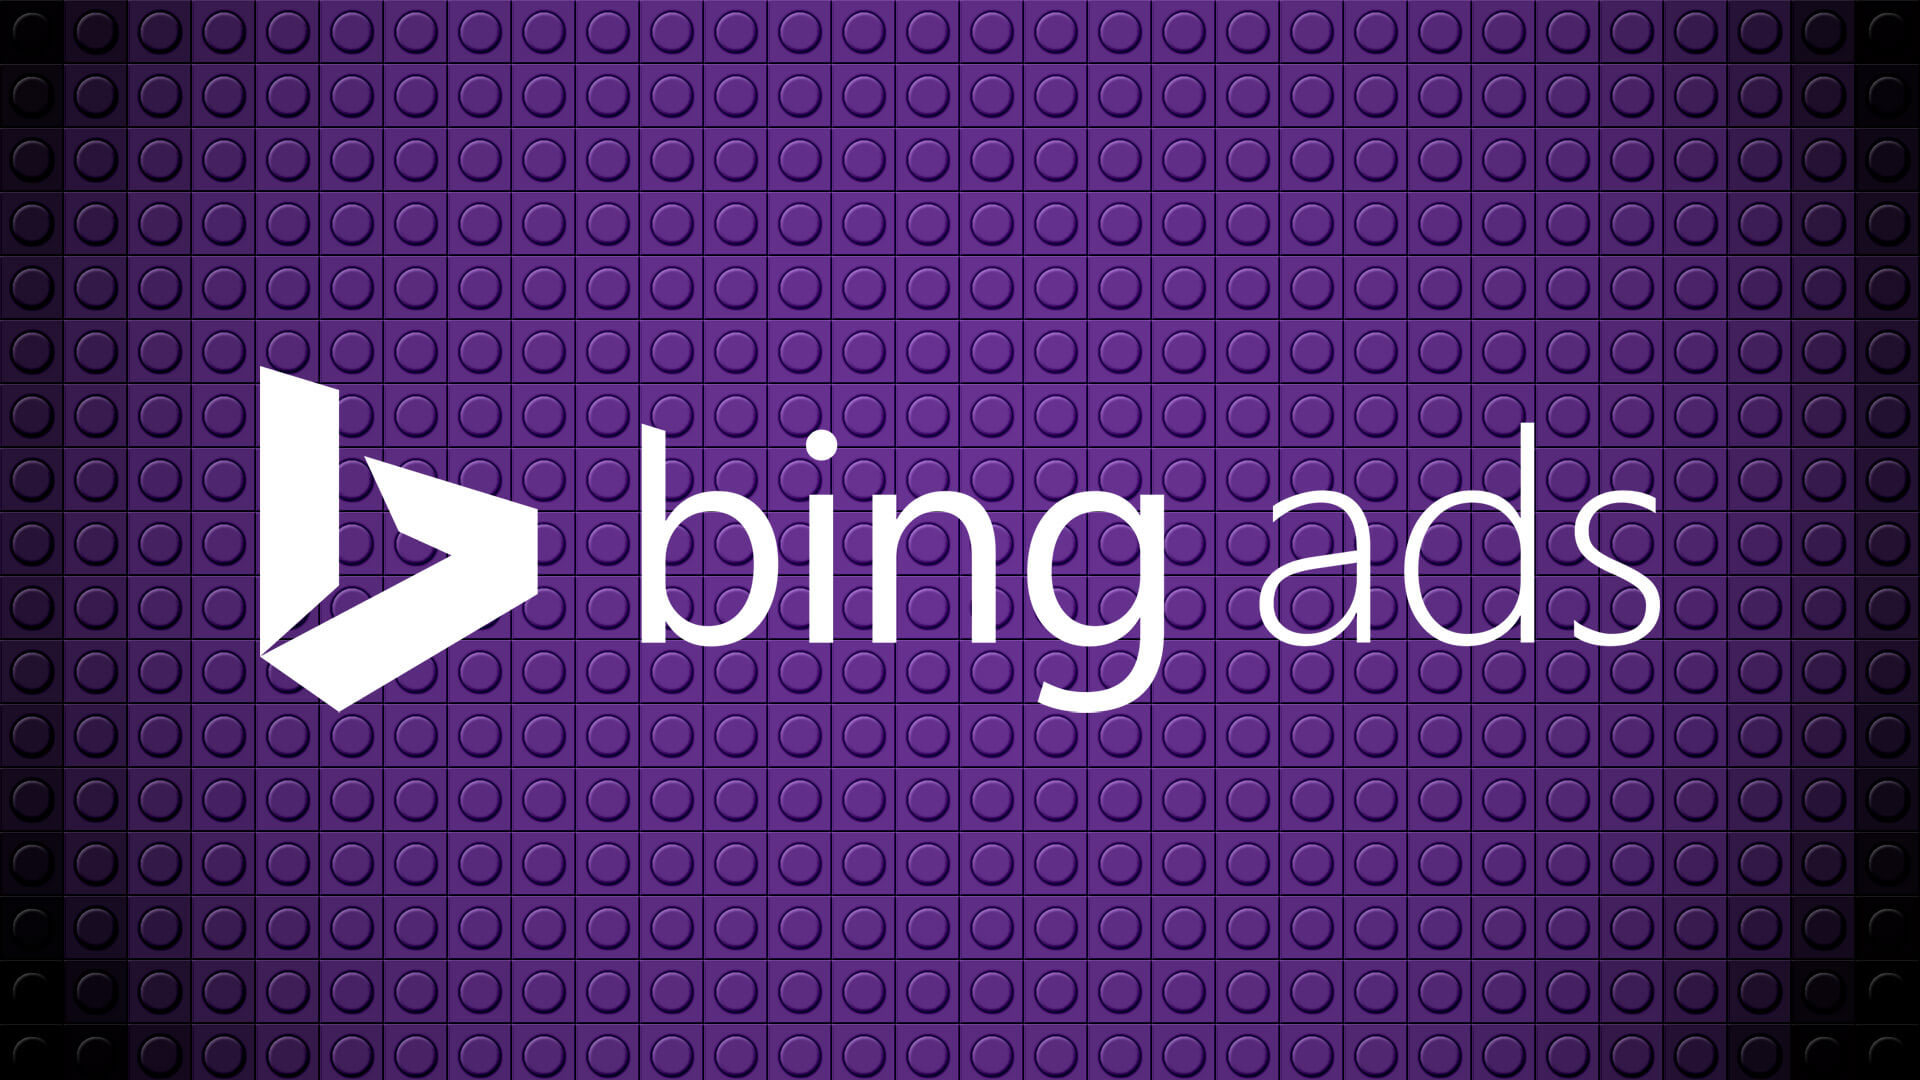 El CPC de la marca Bing Ads sube por el ascensor